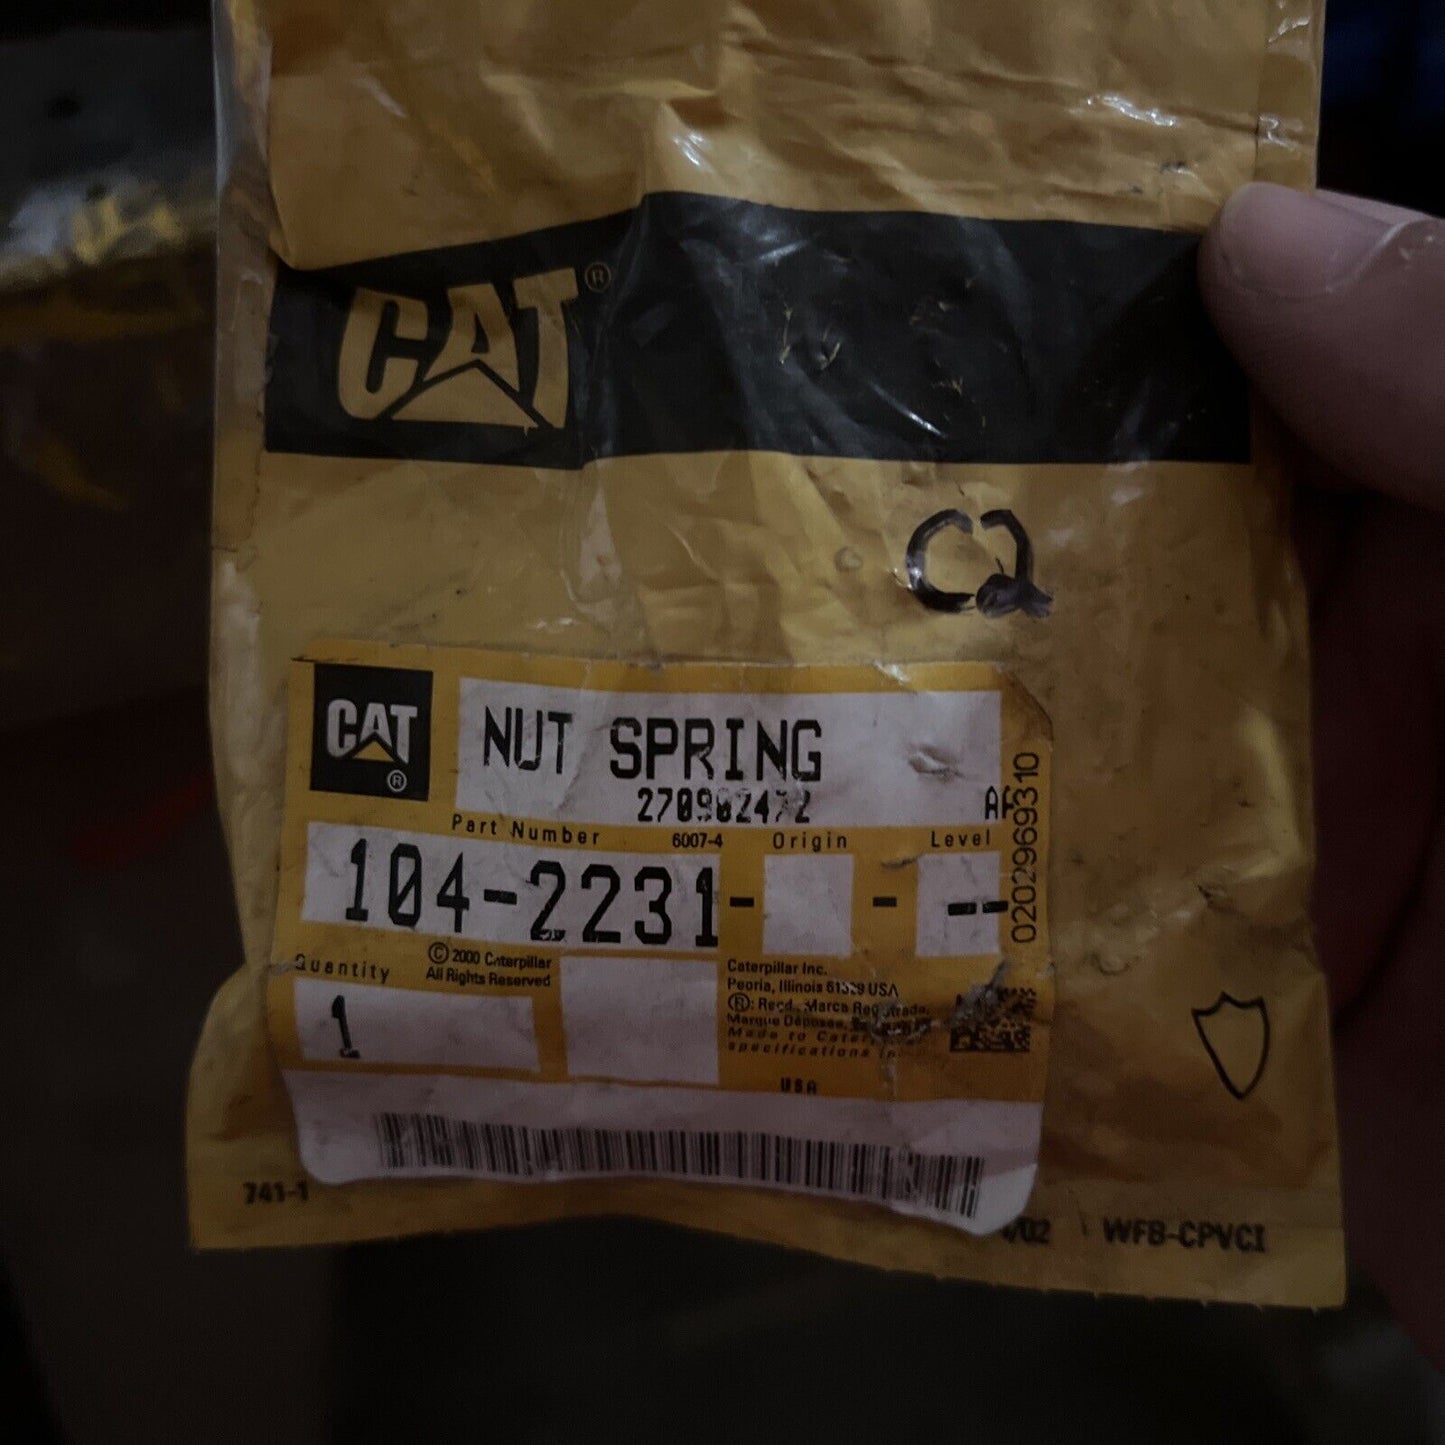 1042231 Nut Spring Fits Caterpillar Models